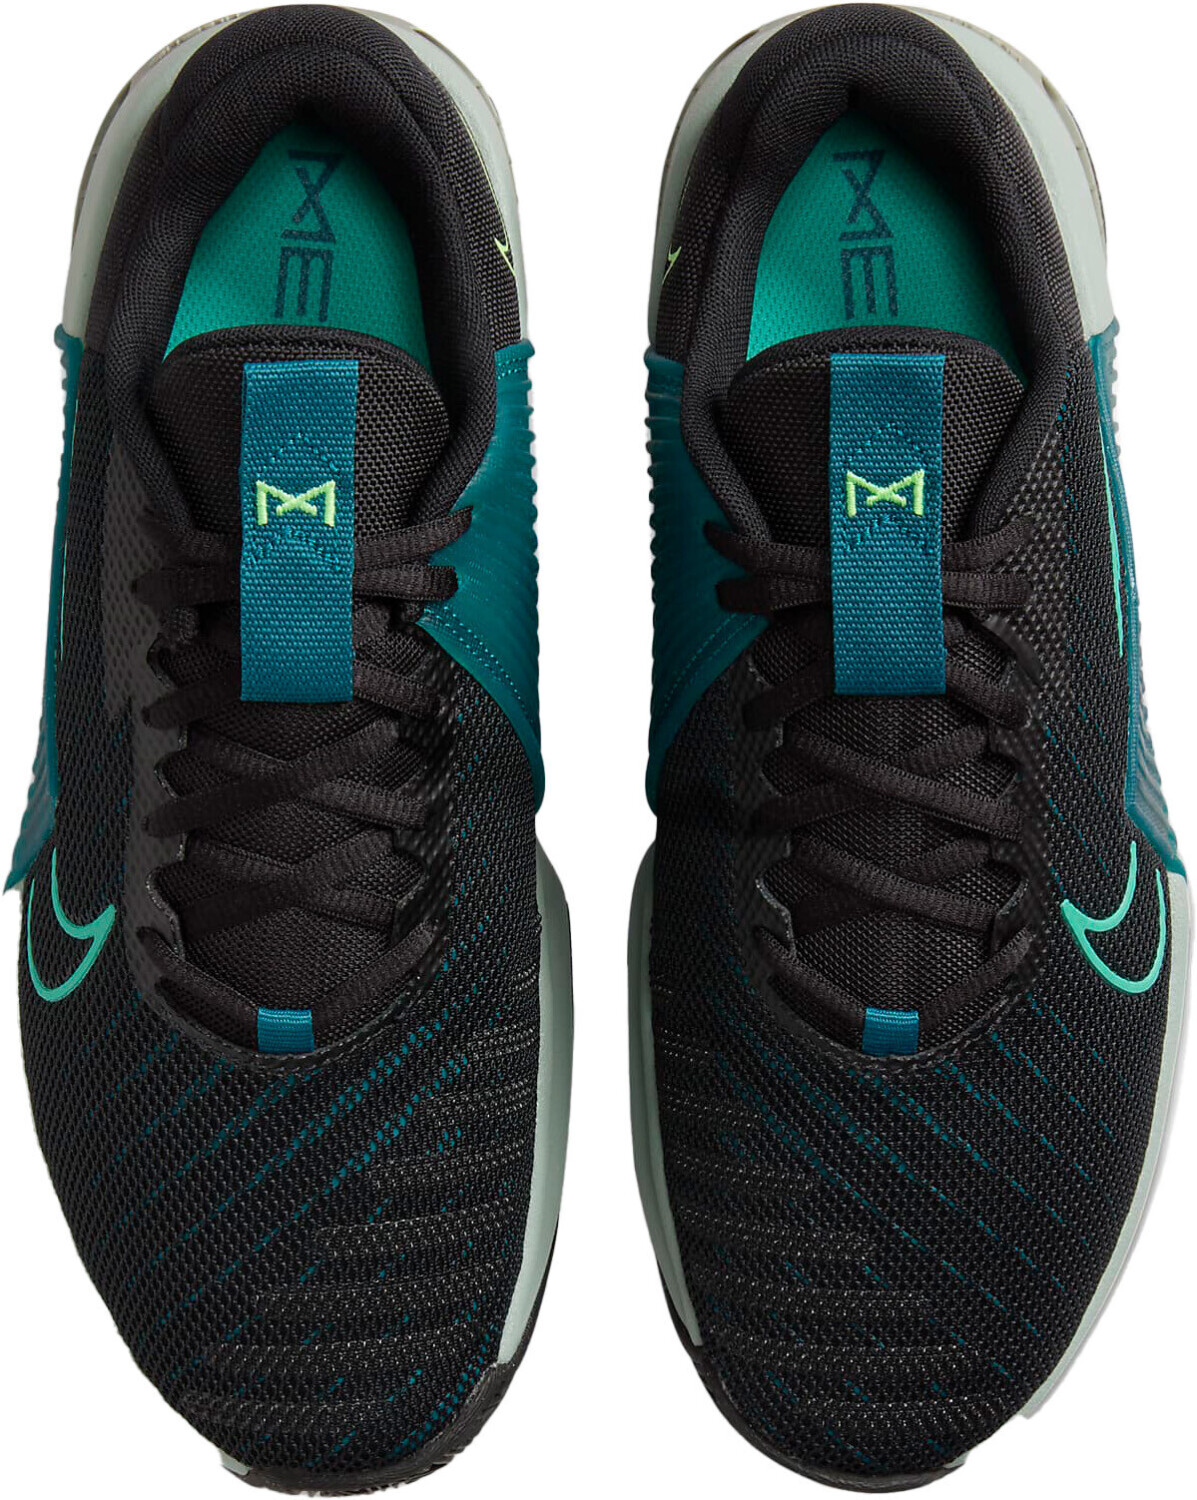 Zapatillas de entrenamiento Nike Metcon 9 Negro y Verde, Hombre